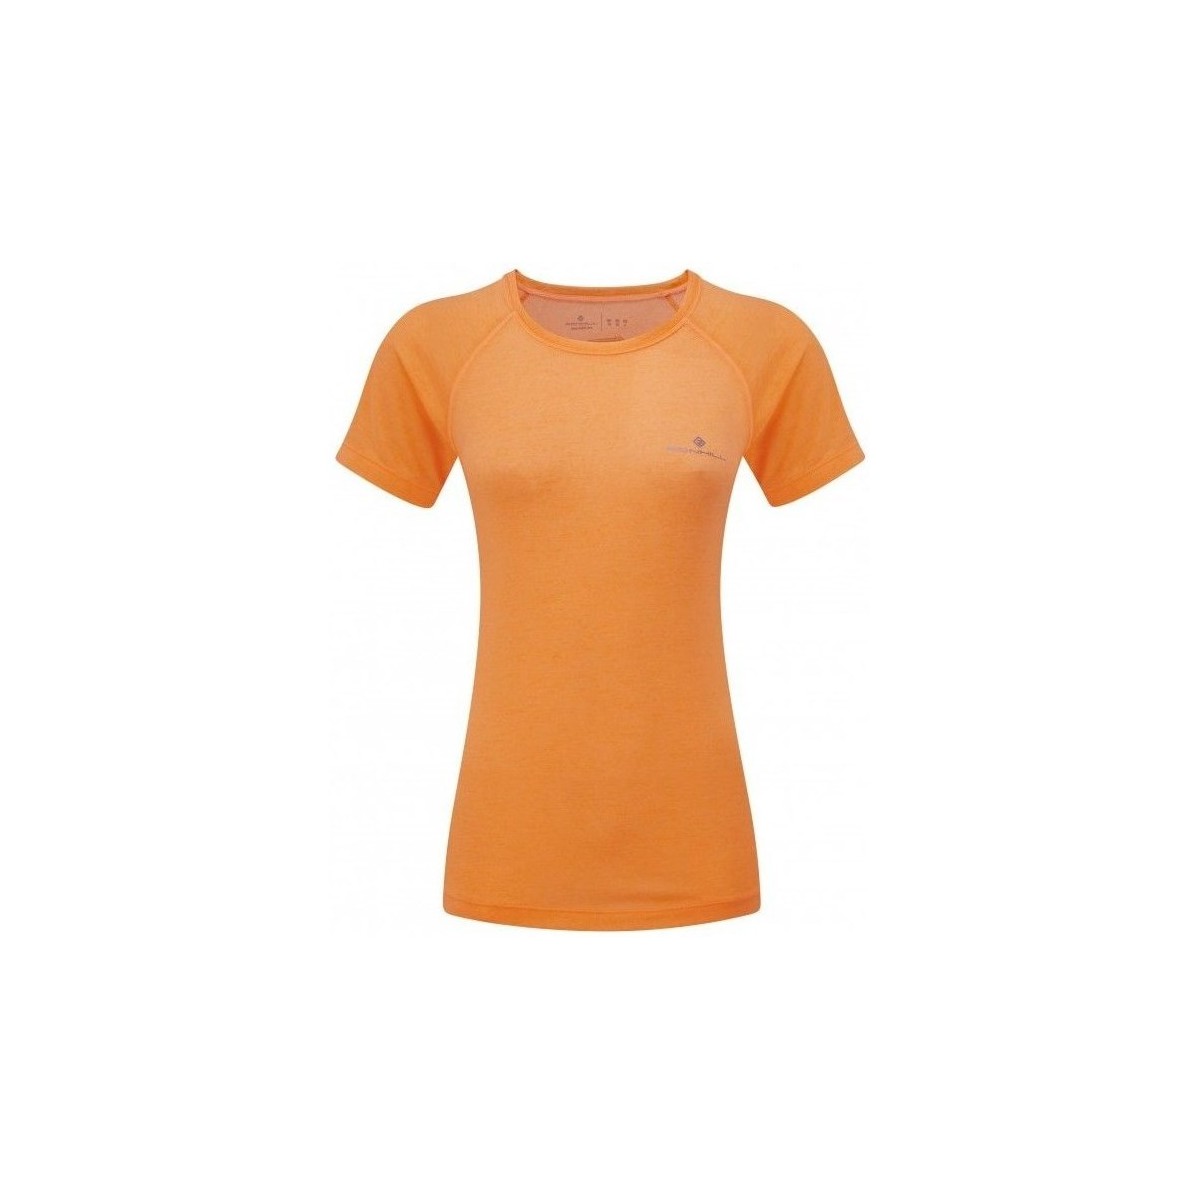 Oblačila Ženske Majice s kratkimi rokavi Ronhill Momentum Oranžna